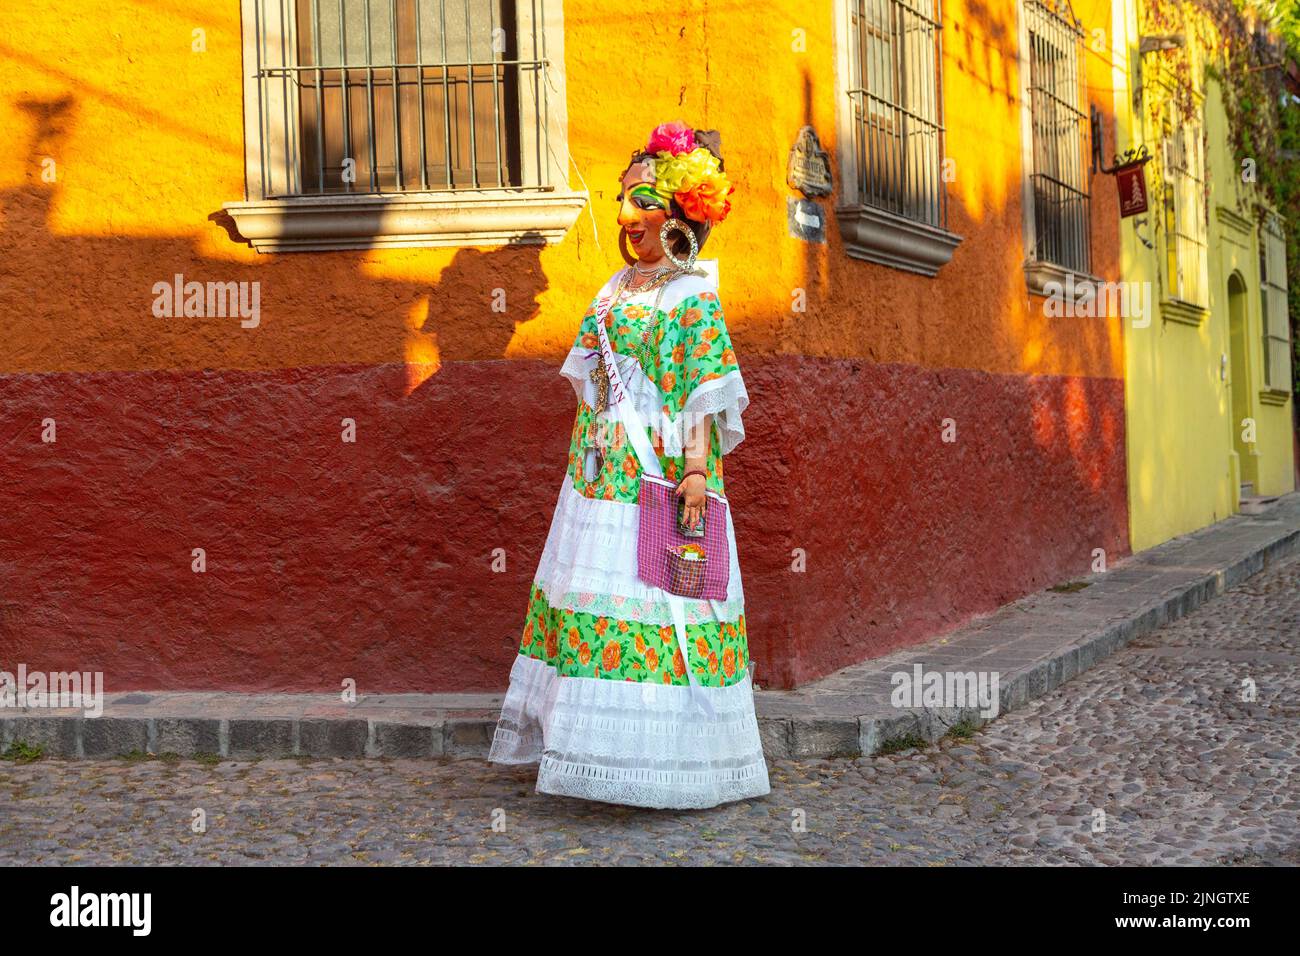 Un mojiganga, ou marionnette géante en papier mâché, marche à travers le centre historique de San Miguel de Allende, Mexique. Banque D'Images